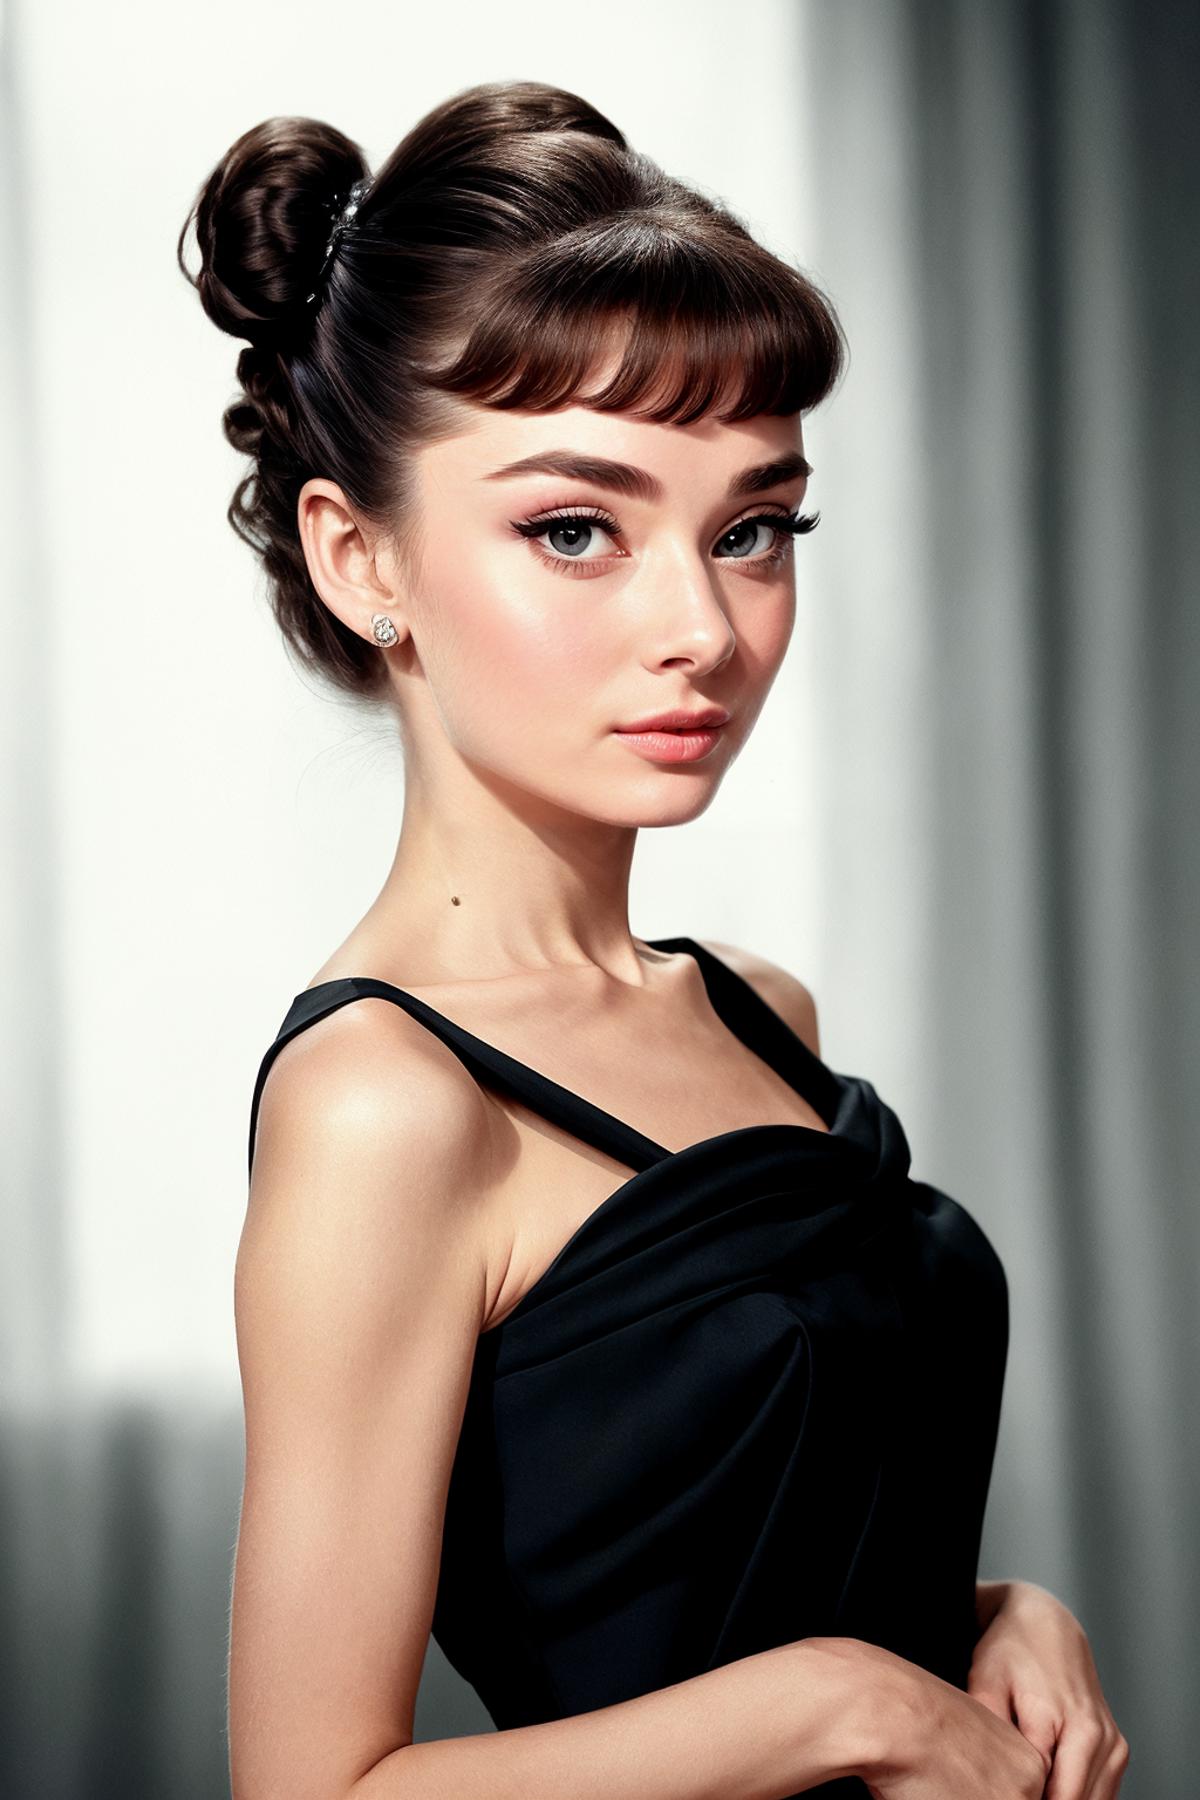 Audrey Hepburn image